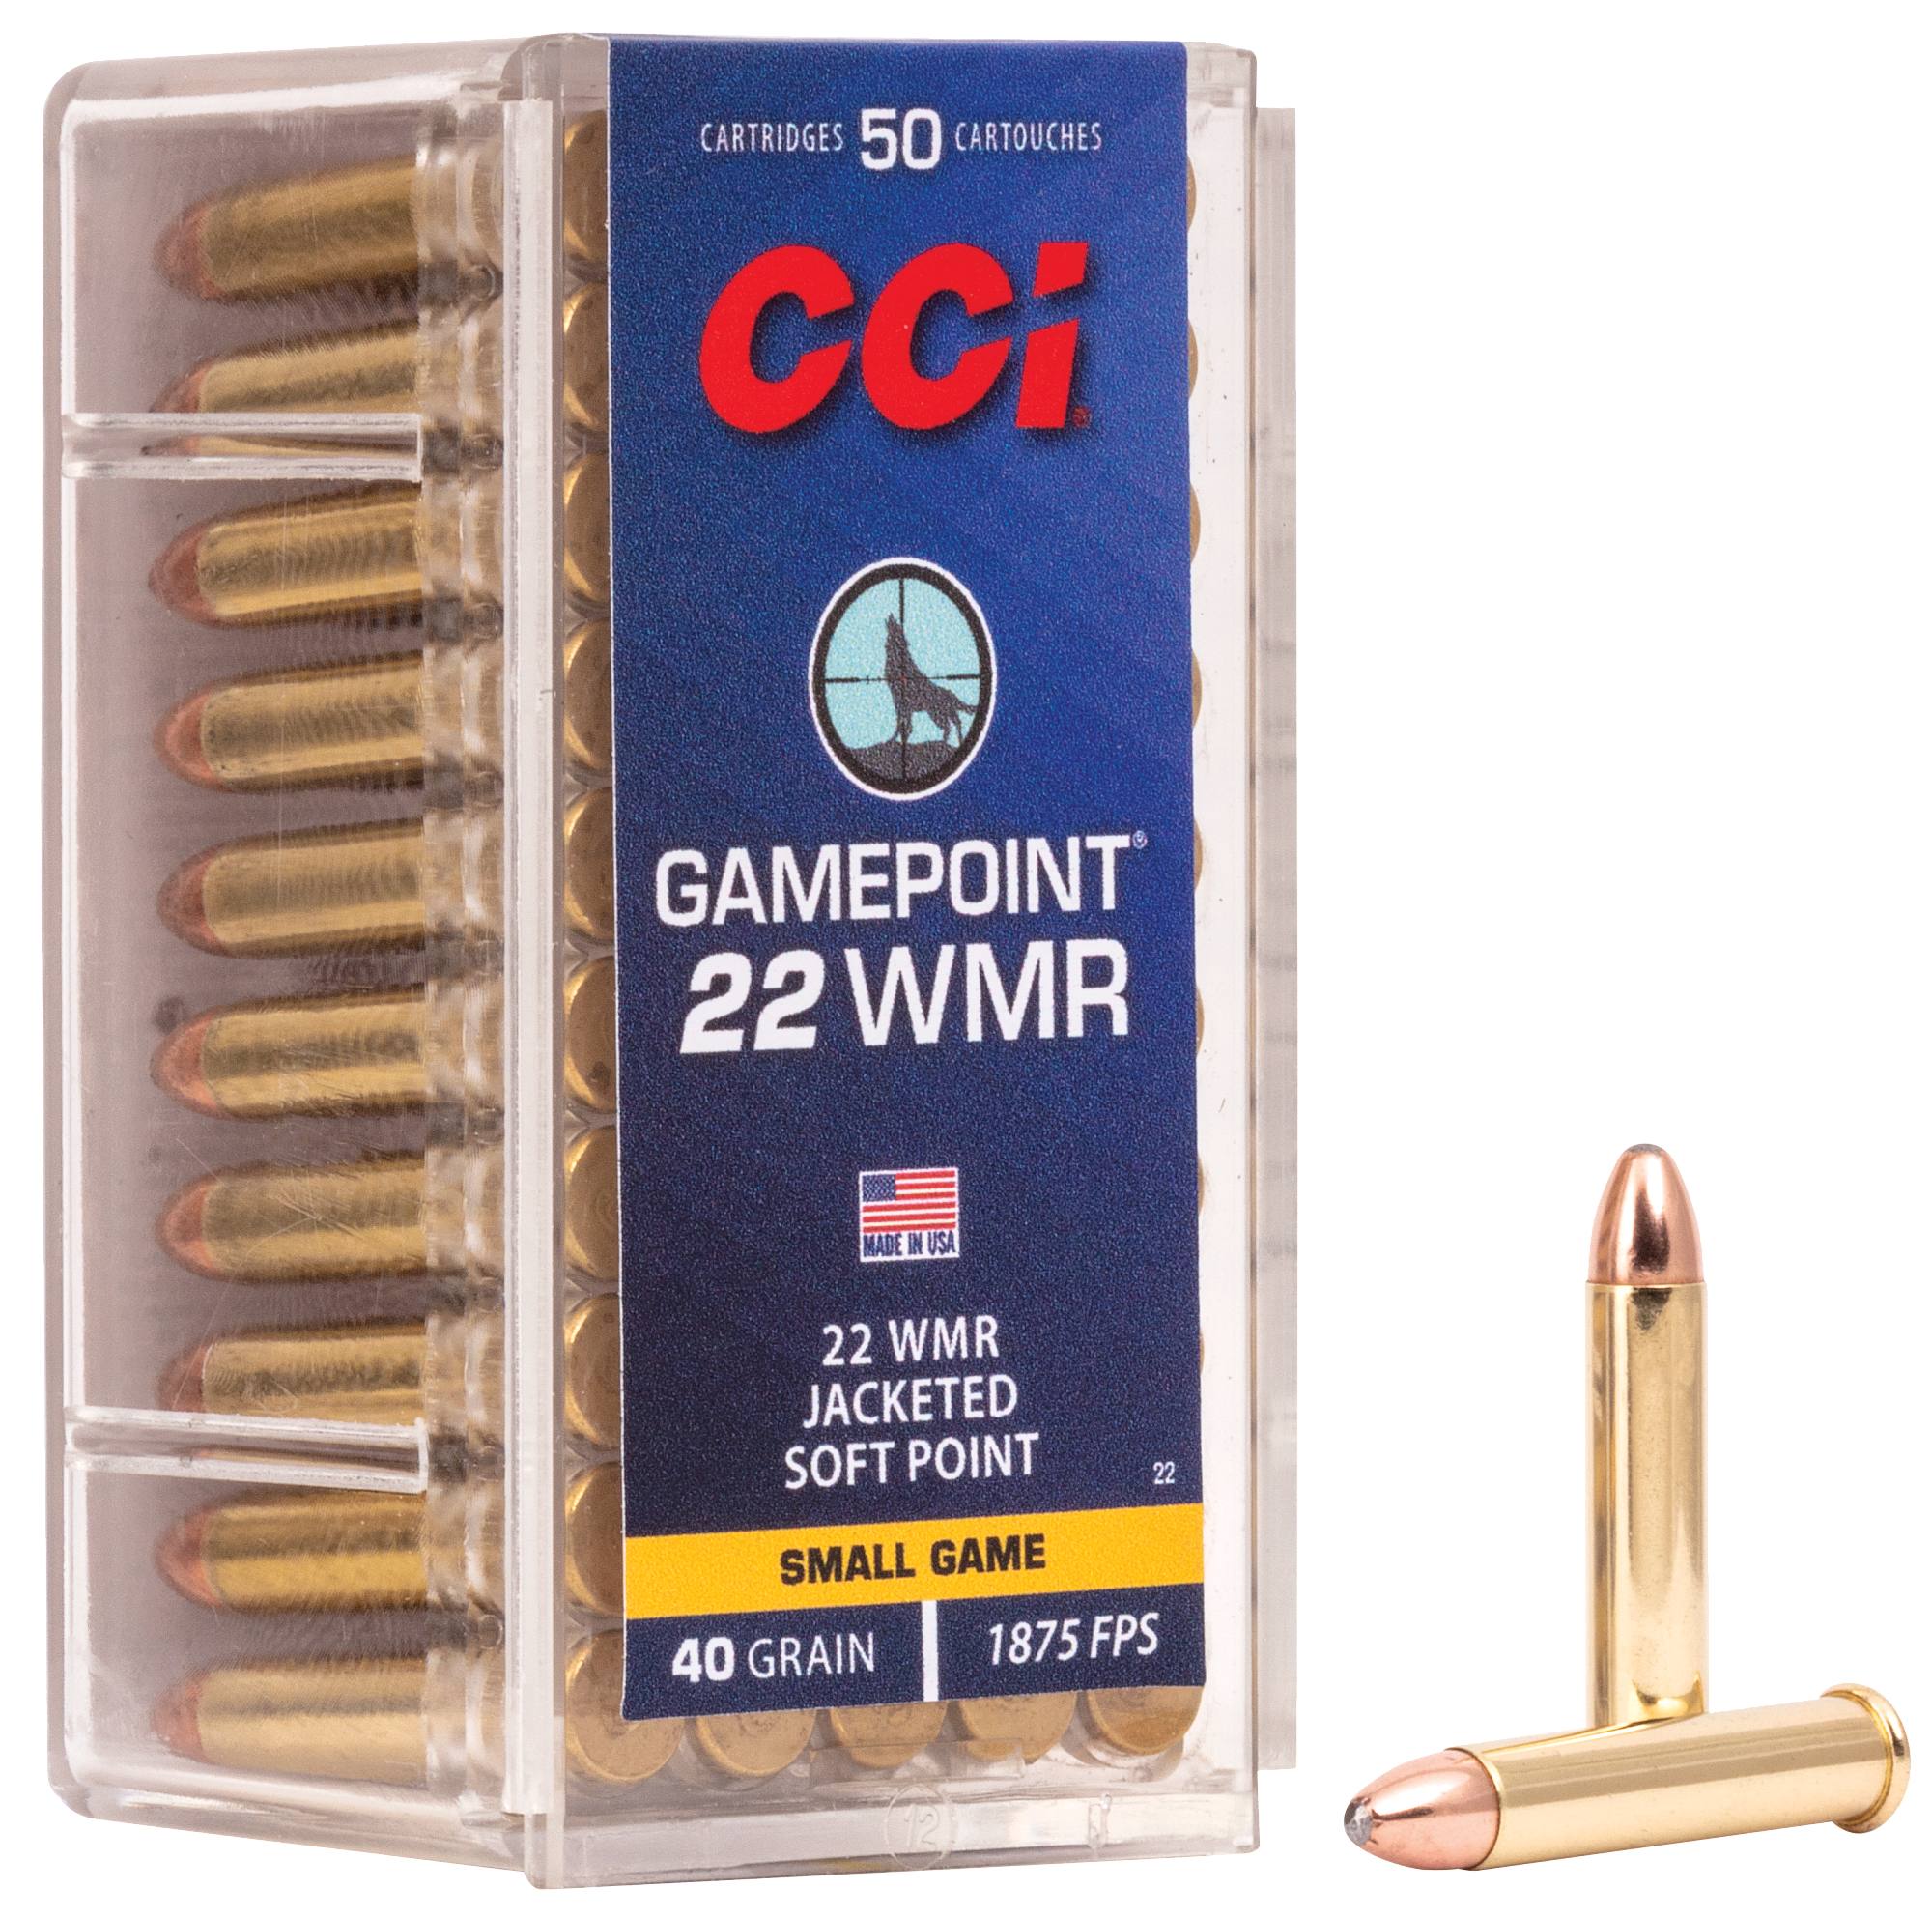 www.cci-ammunition.com